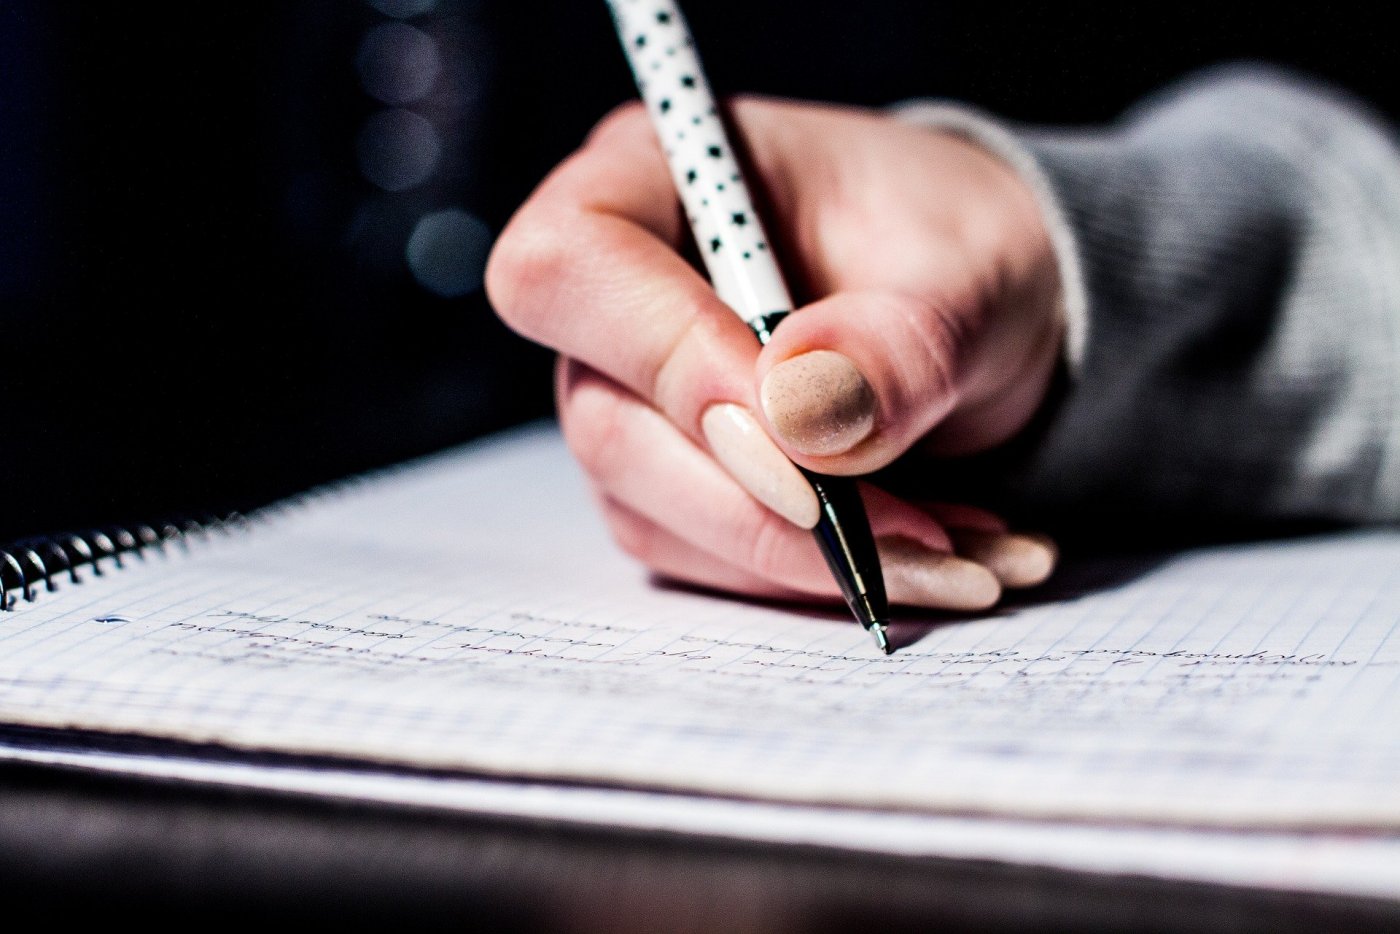 Kobieca dłoń trzymająca biały długopis w czarne gwiazdki i pisząca w zeszycie z notatkami